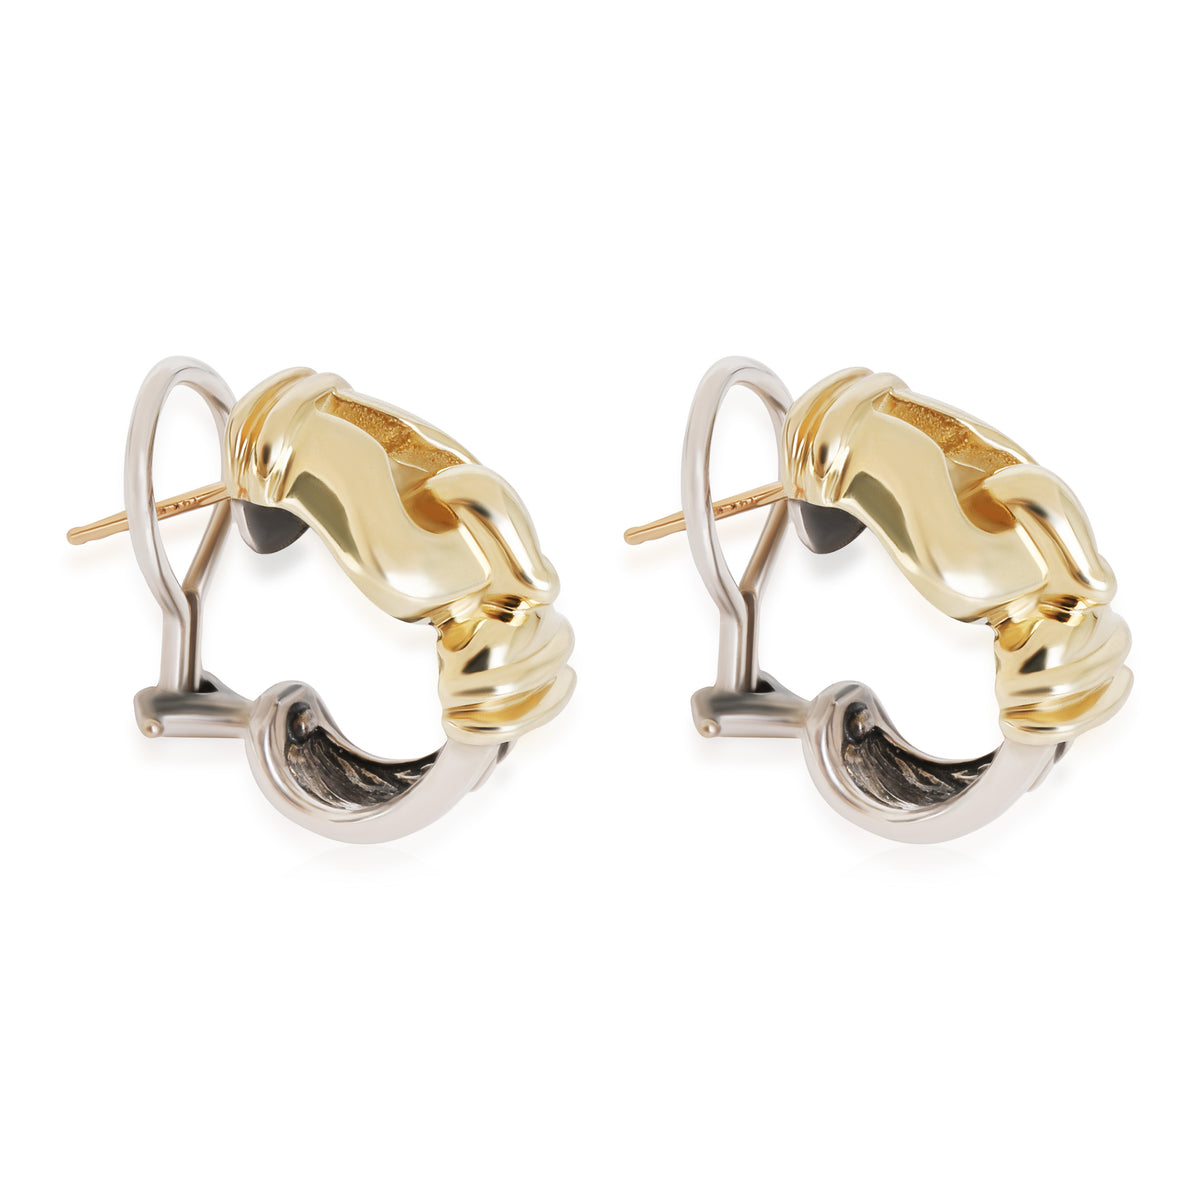 David Yurman Buckle Earrings in 14k Yellow Gold/Sterling Silver